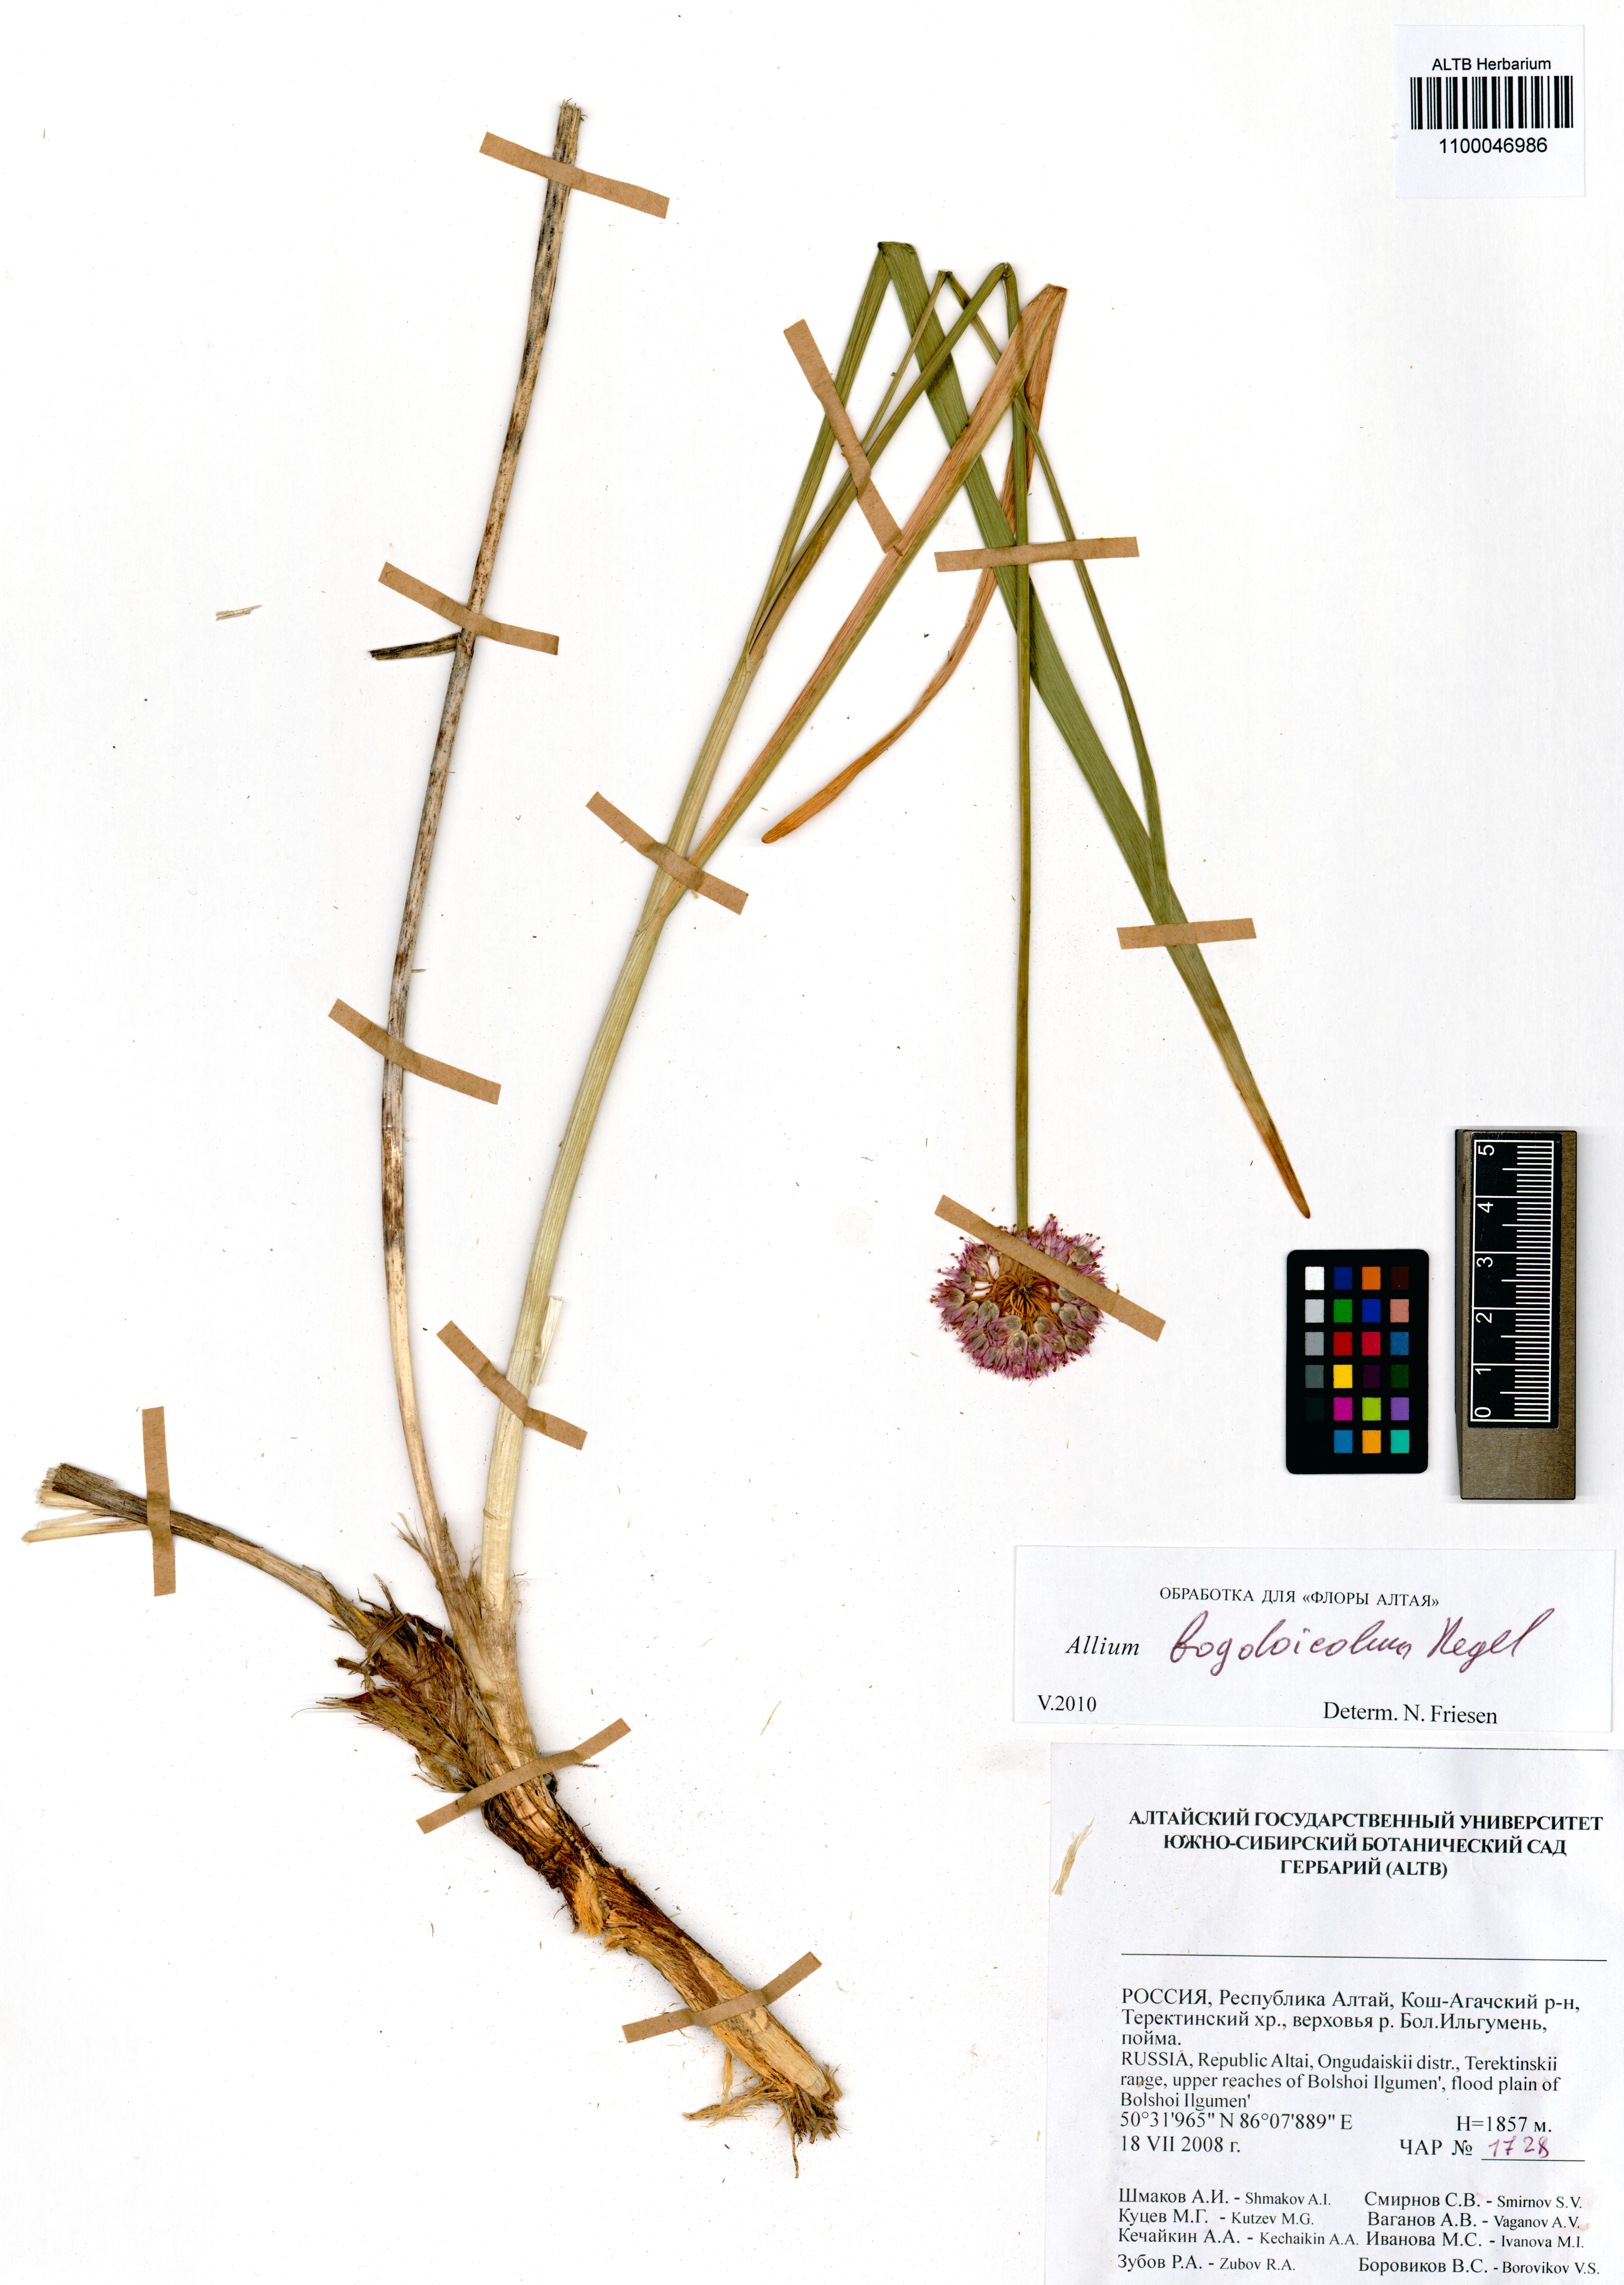 Amaryllidaceae,Allium bogdoicola Regel